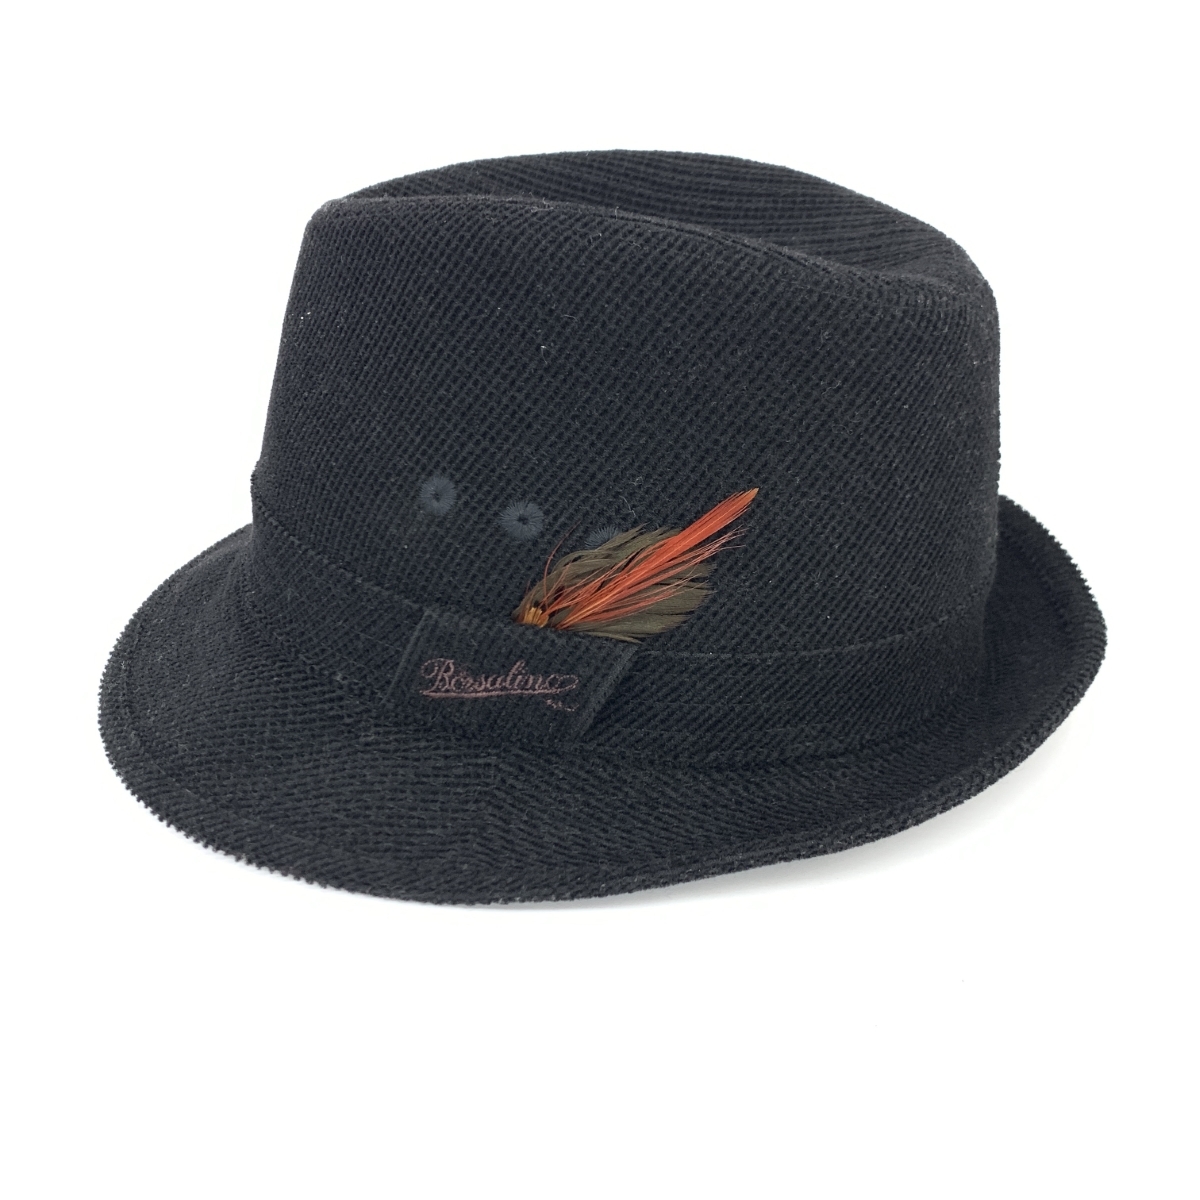 良好◆Borsalino ボルサリーノ 中折れハット 57◆B1019-02A00 ブラック ウール ポリエステル メンズ 日本製 帽子 hat 服飾小物_画像2